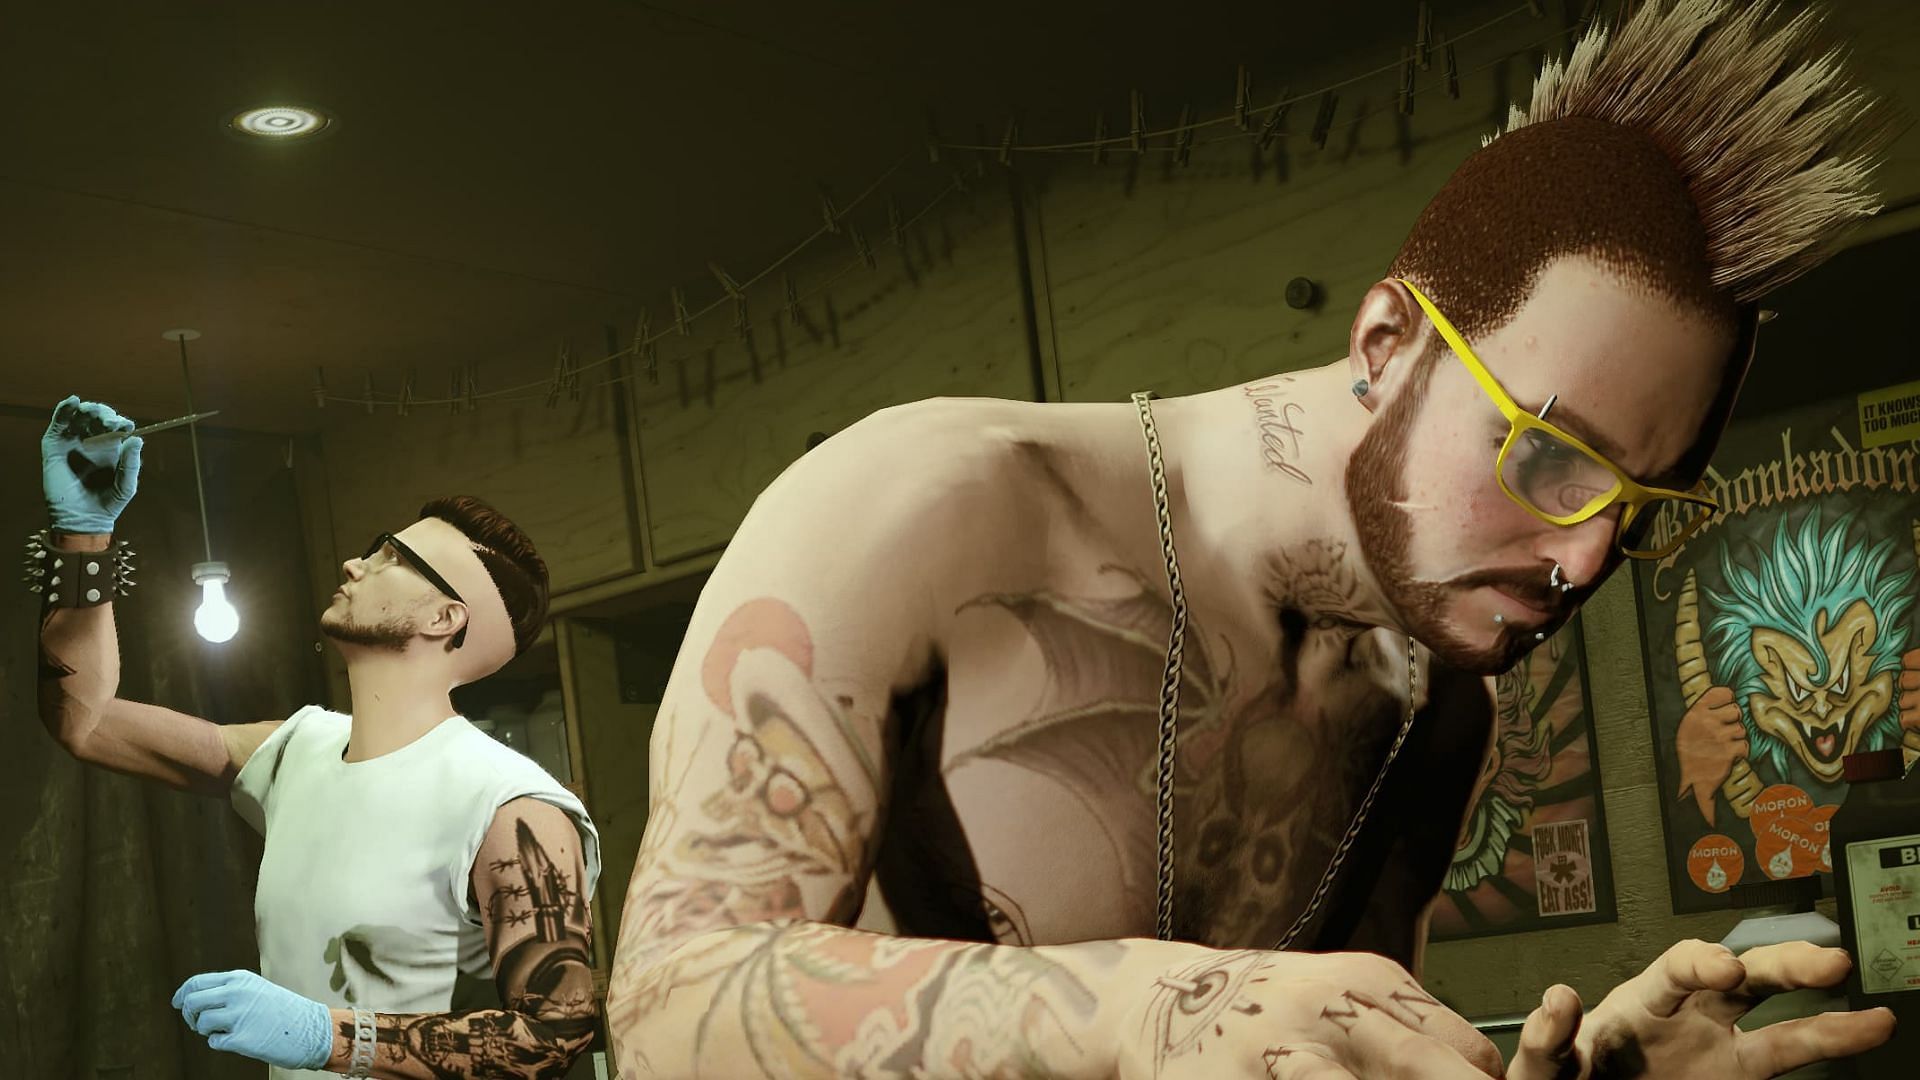 A promotional image tied to Los Santos Drug Wars (Image via Rockstar Games)